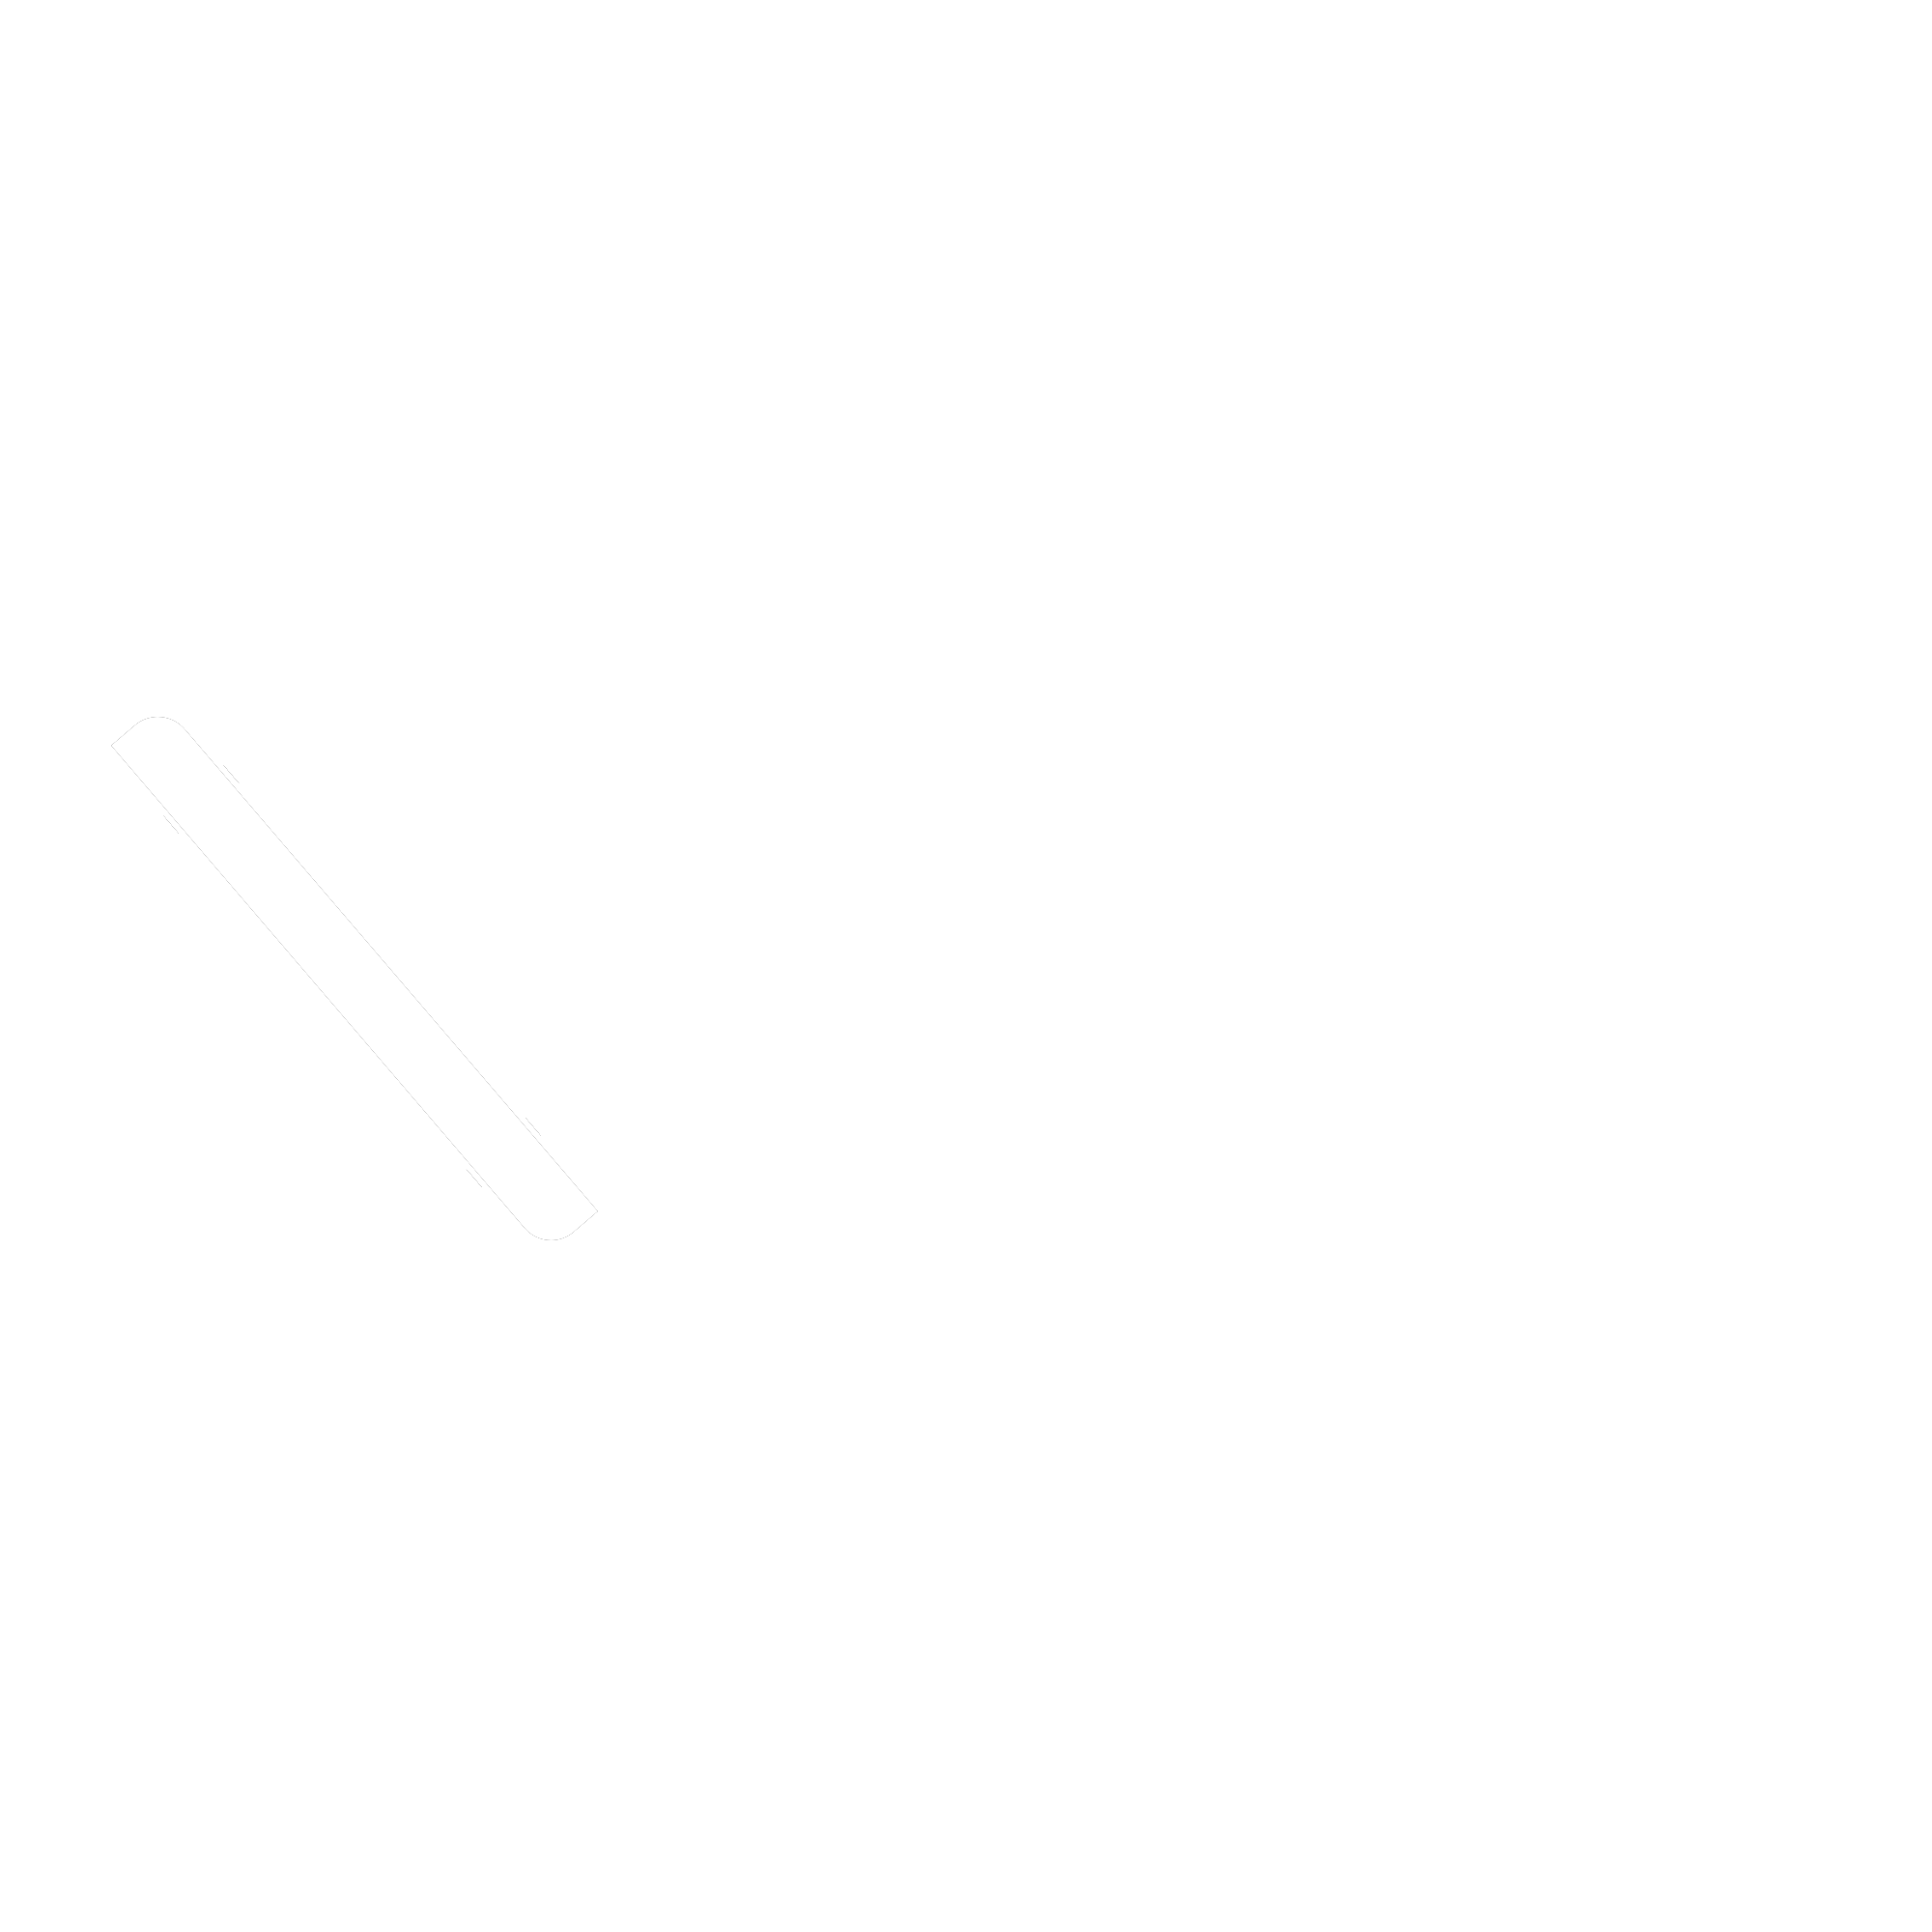 QuanticoBit